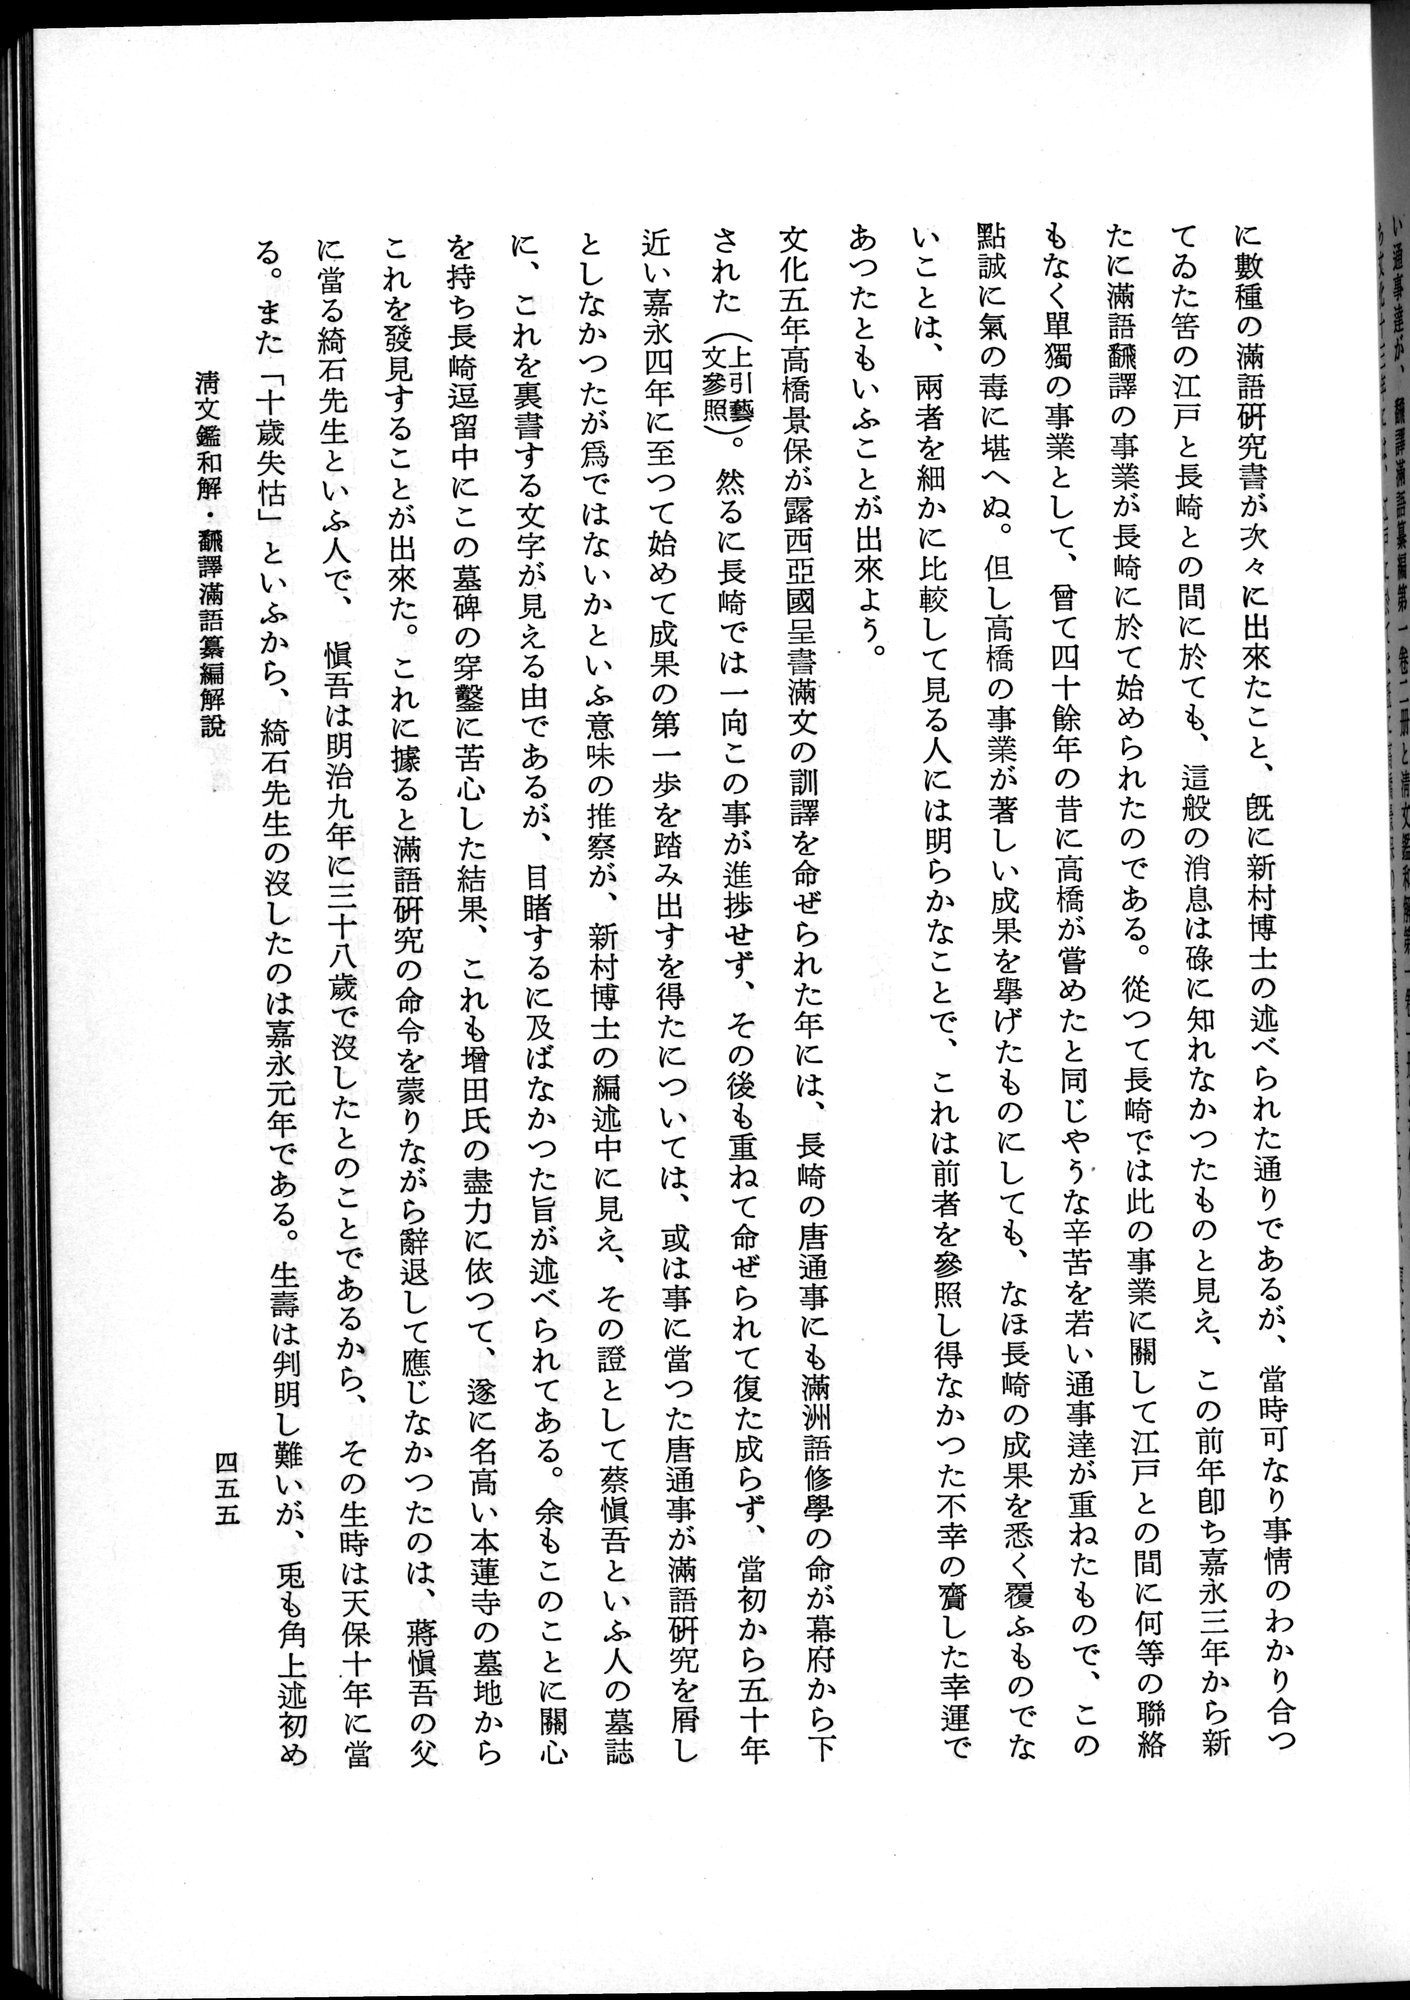 羽田博士史学論文集 : vol.2 / Page 517 (Grayscale High Resolution Image)